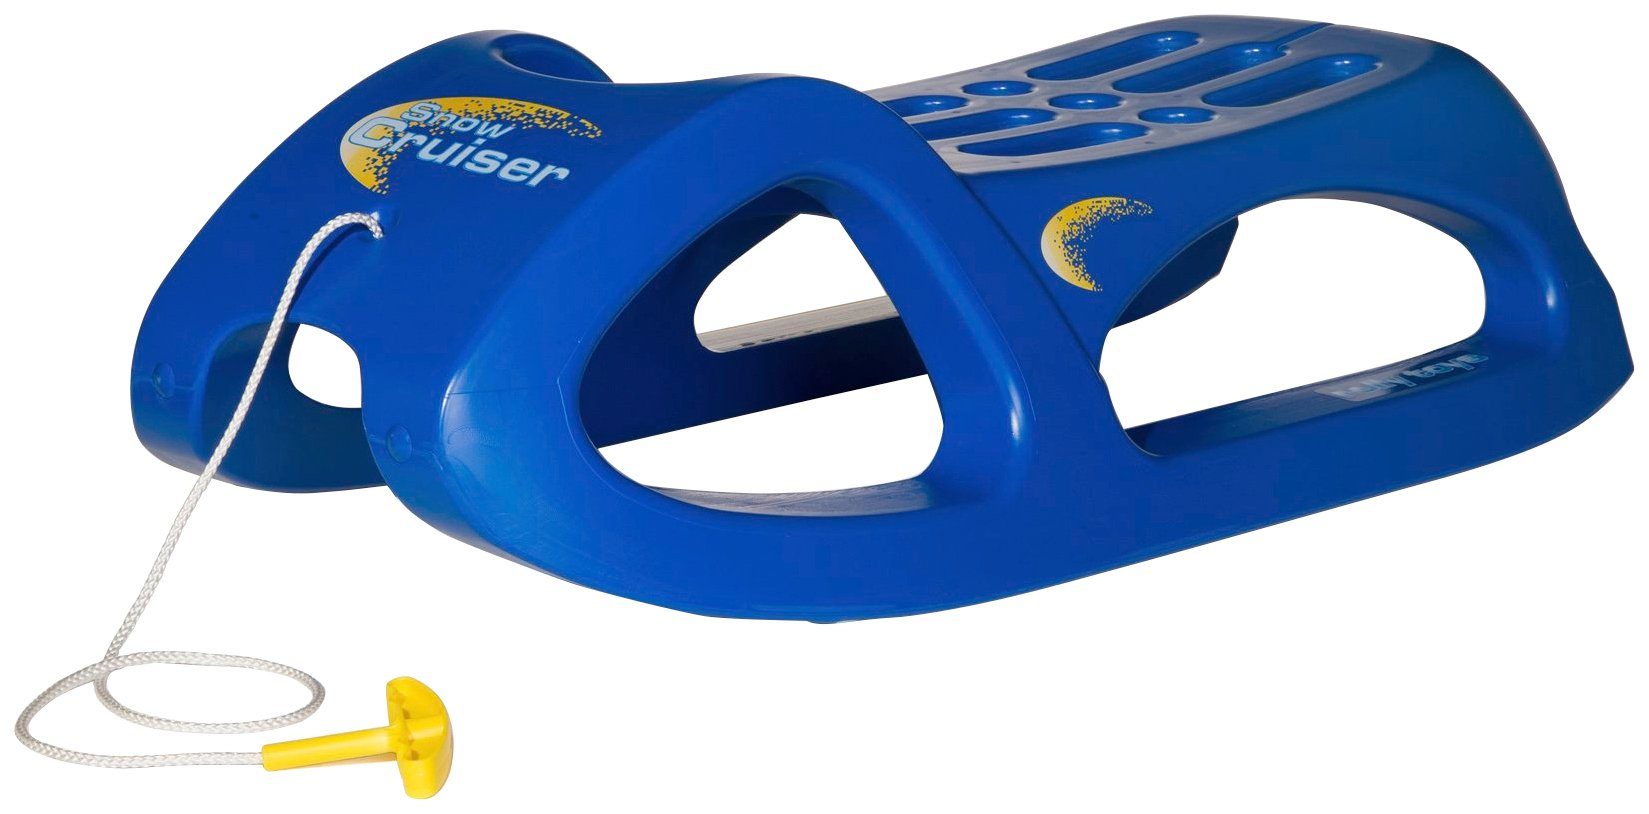 rolly toys® Schlitten rollySnow Cruiser, blau, mit Stahlschienen an den Kufen